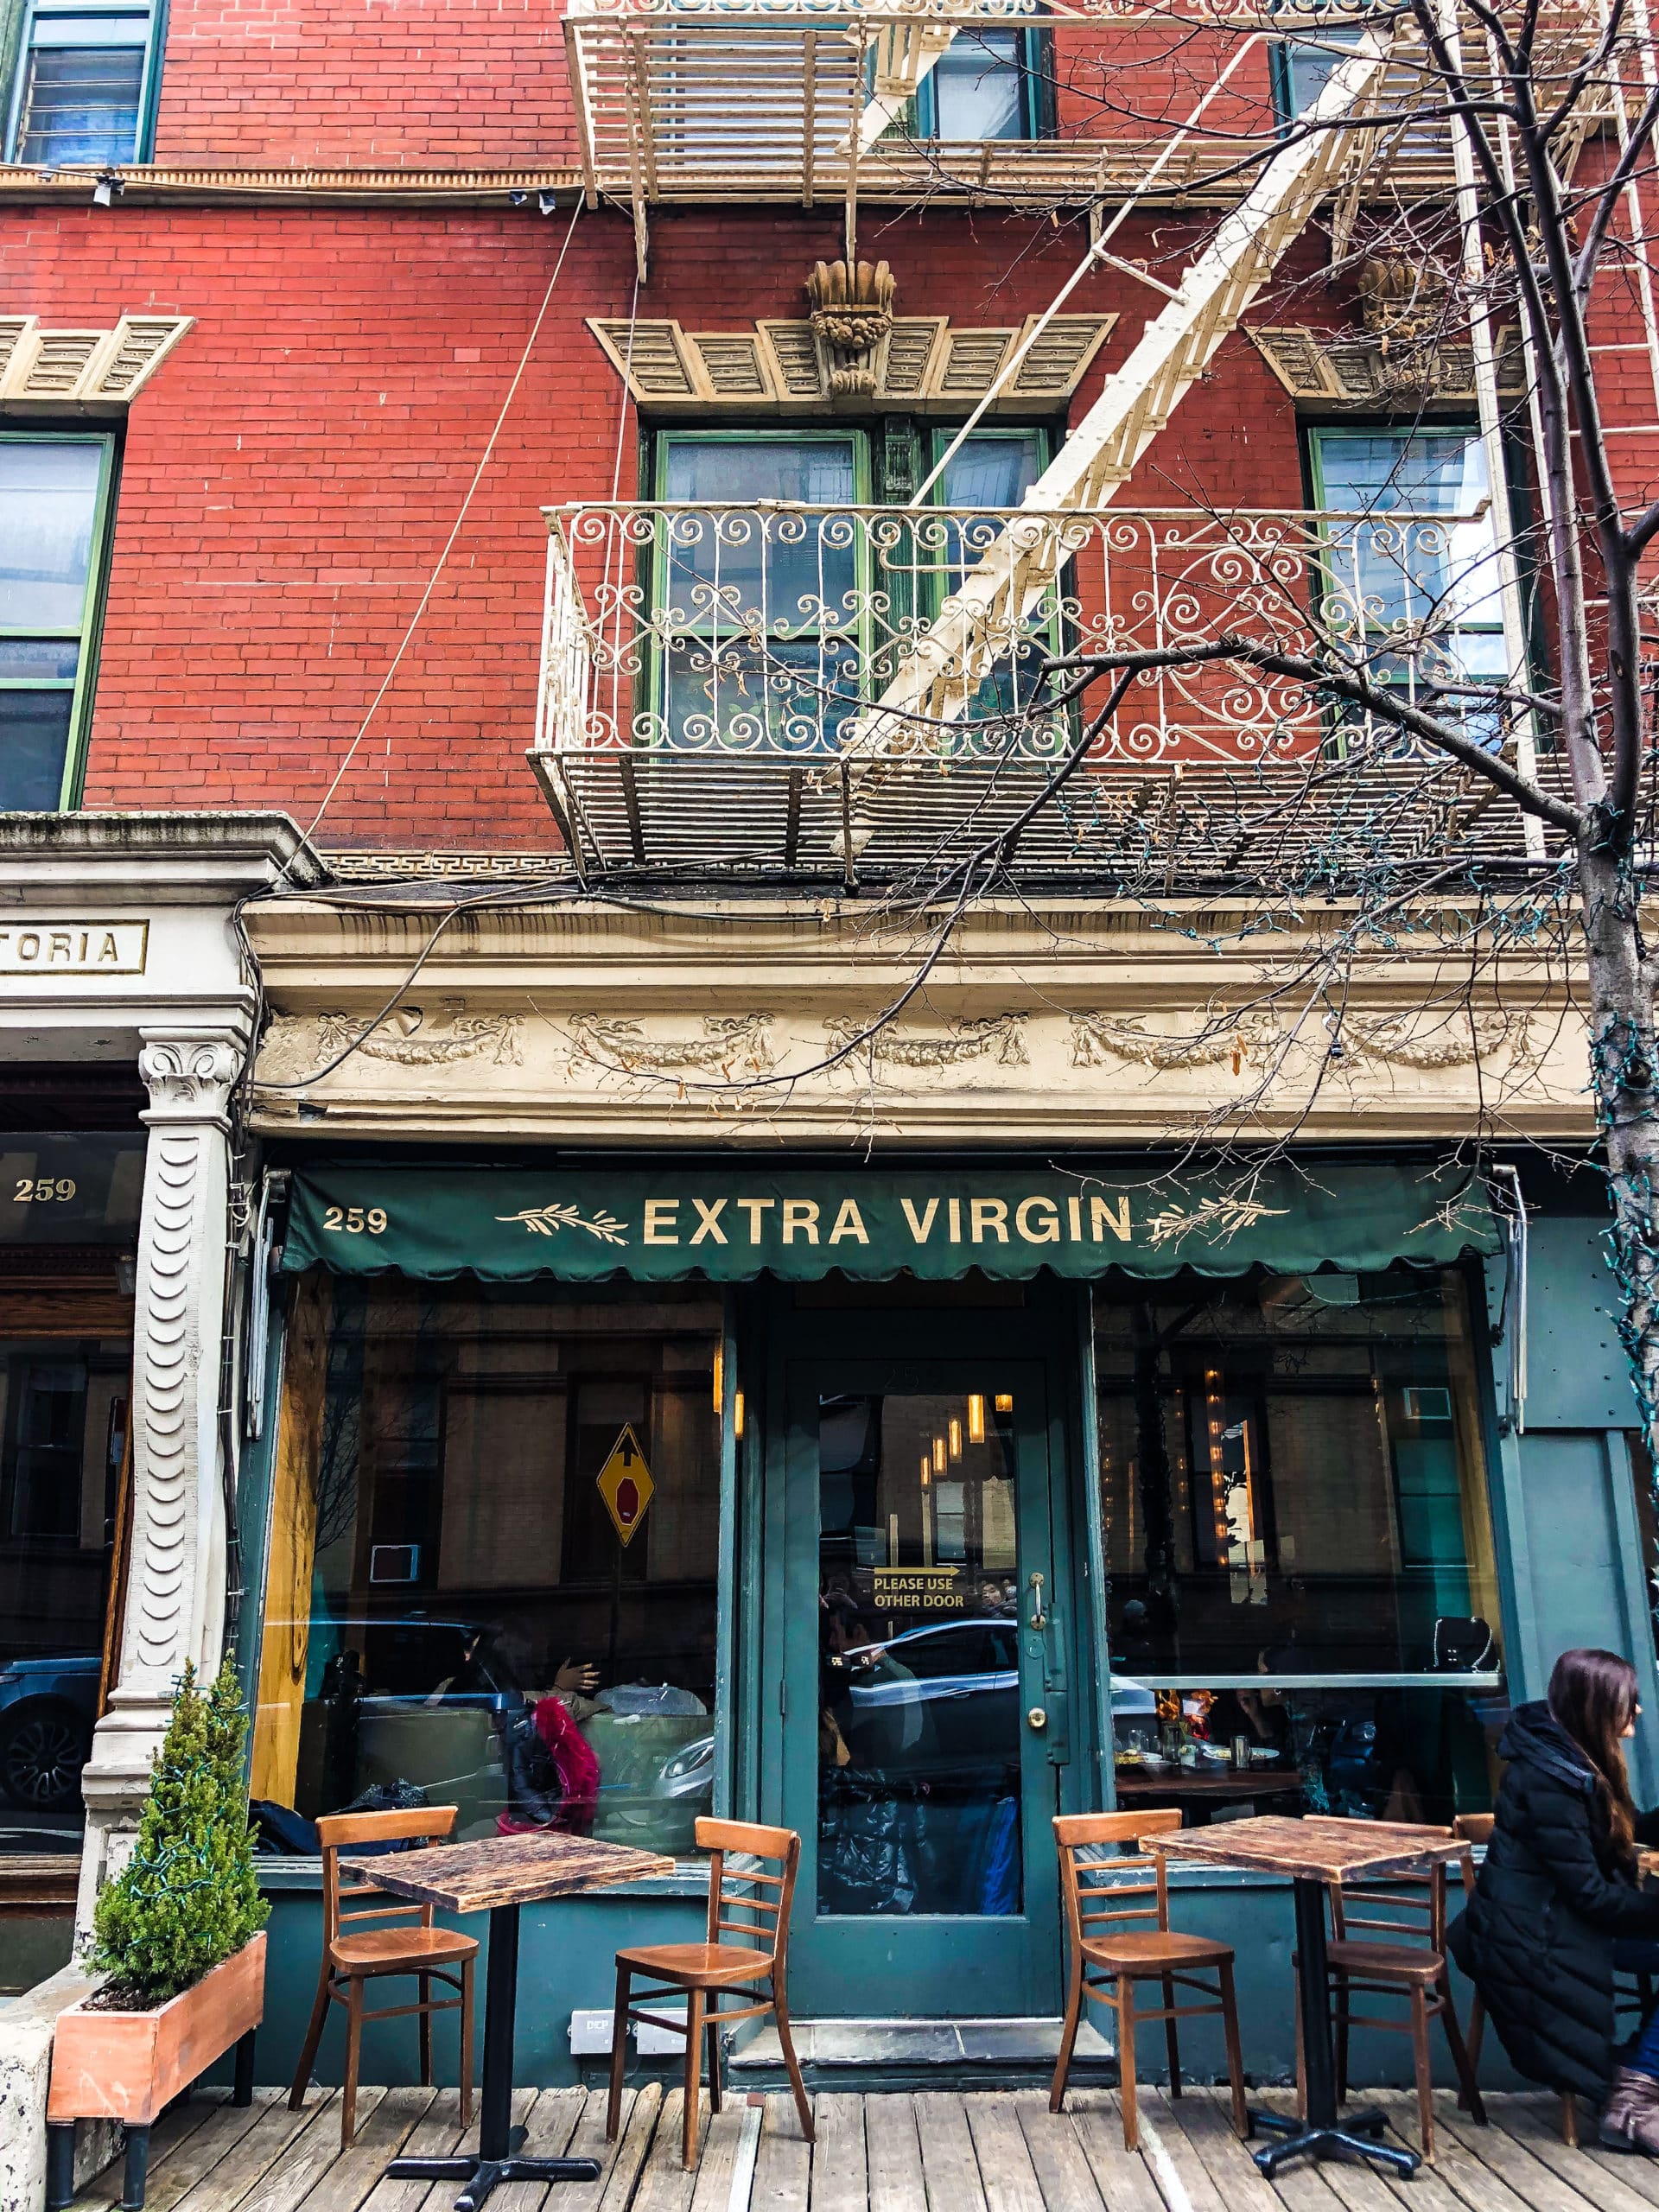 Еда в Нью-Йорке: уличный фастфуд, дайнеры, рестораны | Travel•Blender в США